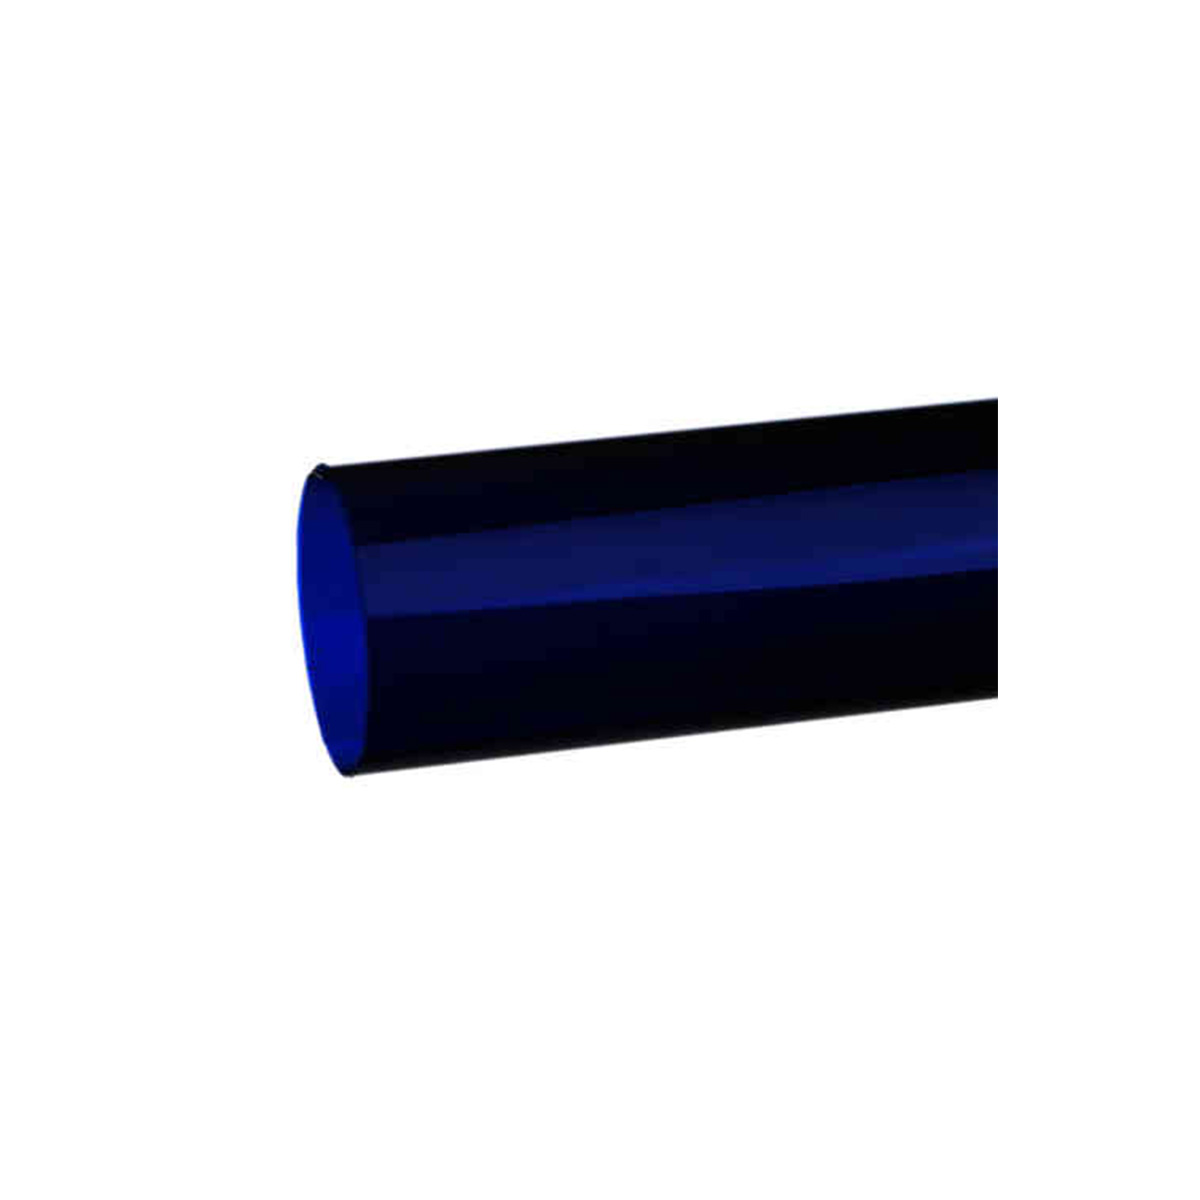 Hedler MaxiSoft Filterfolie blau 40 x 60 cm - Farbeffektfilter